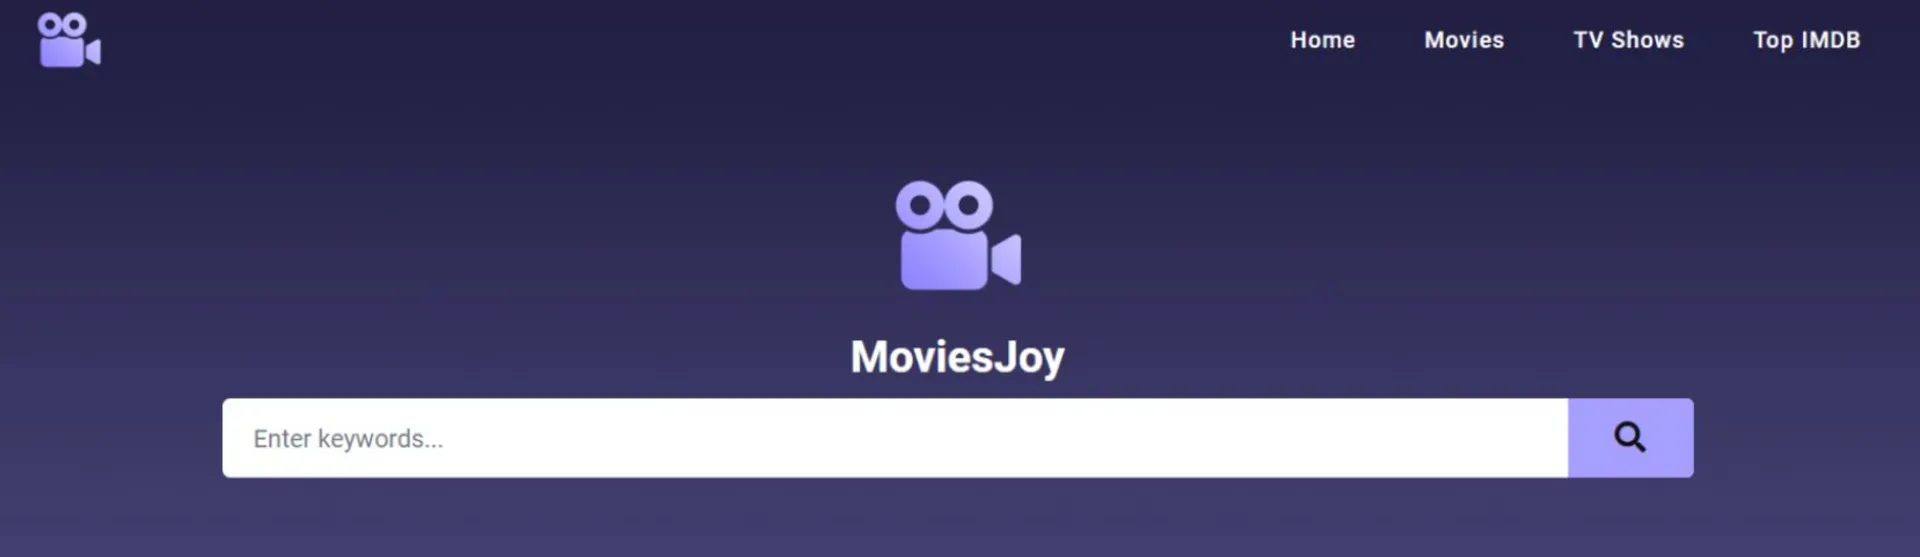 سایت MovieJoy